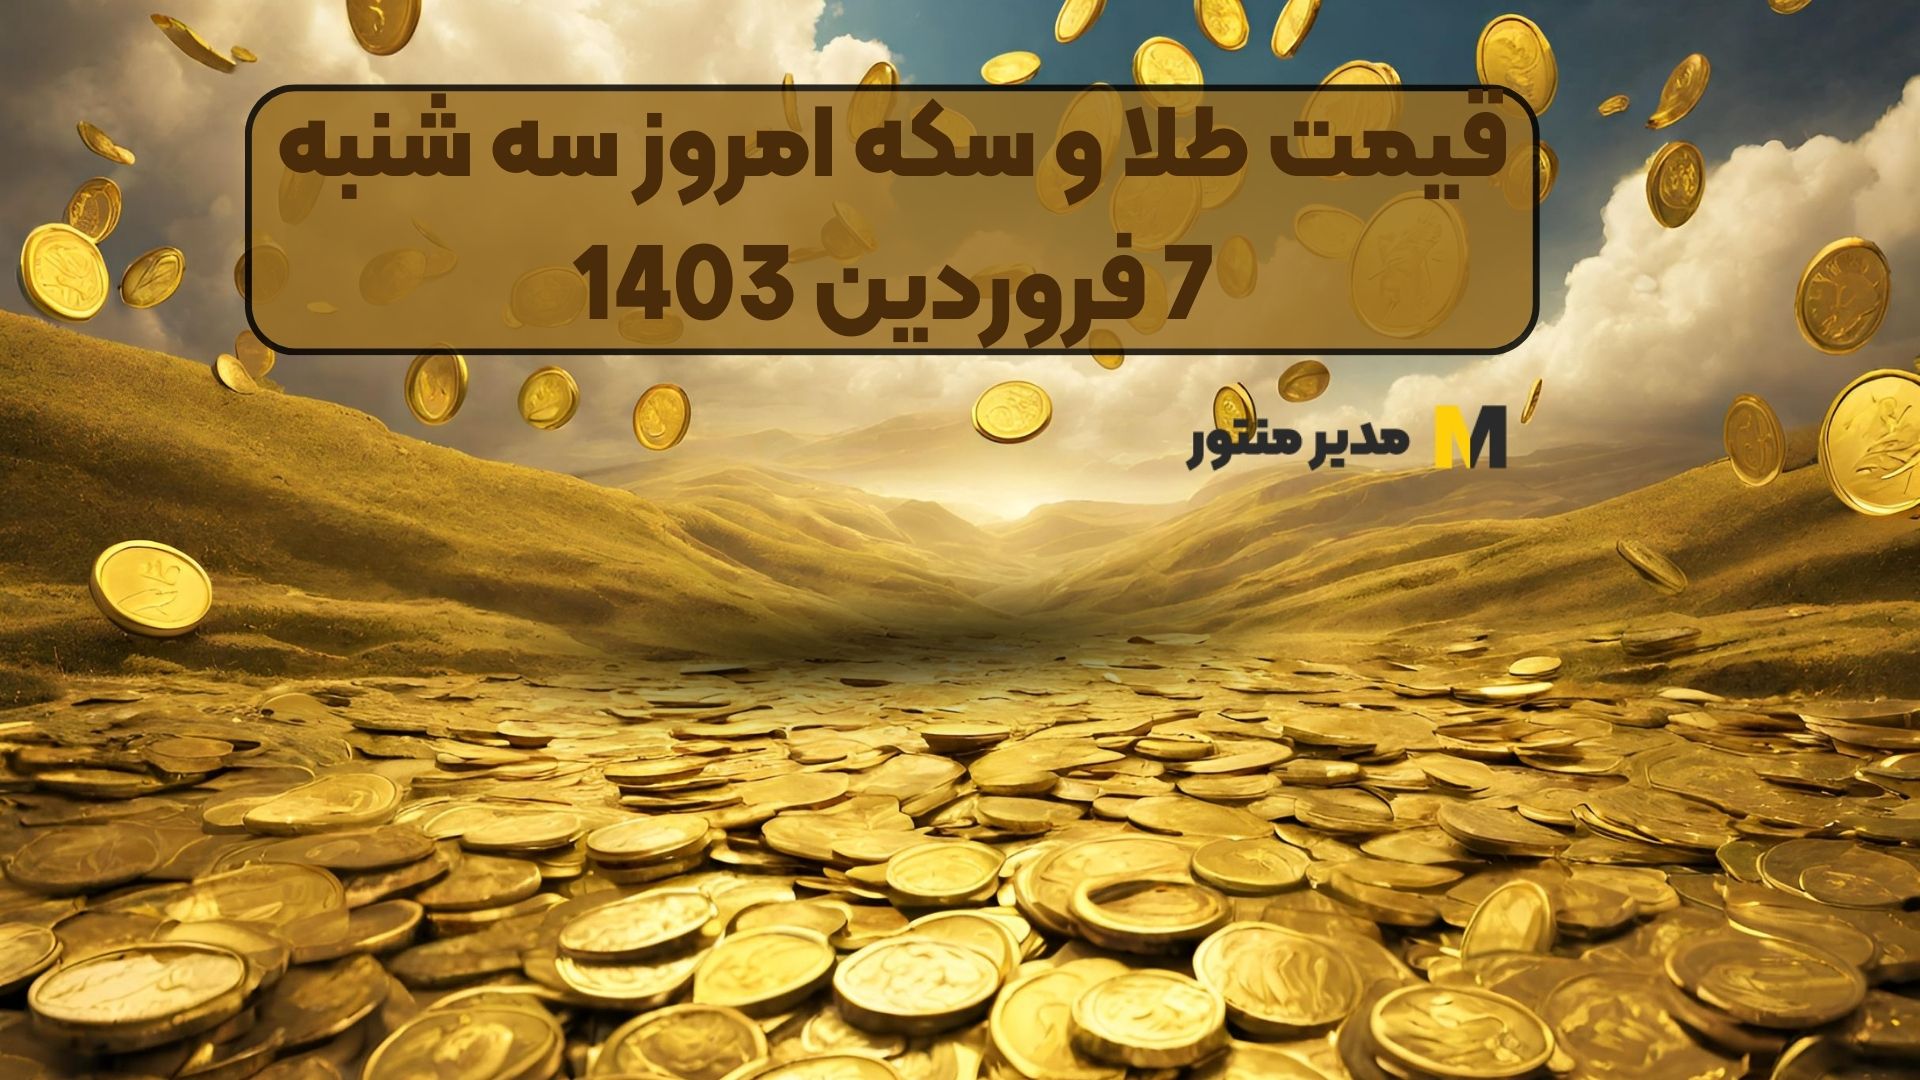 قیمت طلا و سکه امروز سه شنبه 7 فروردین 1403